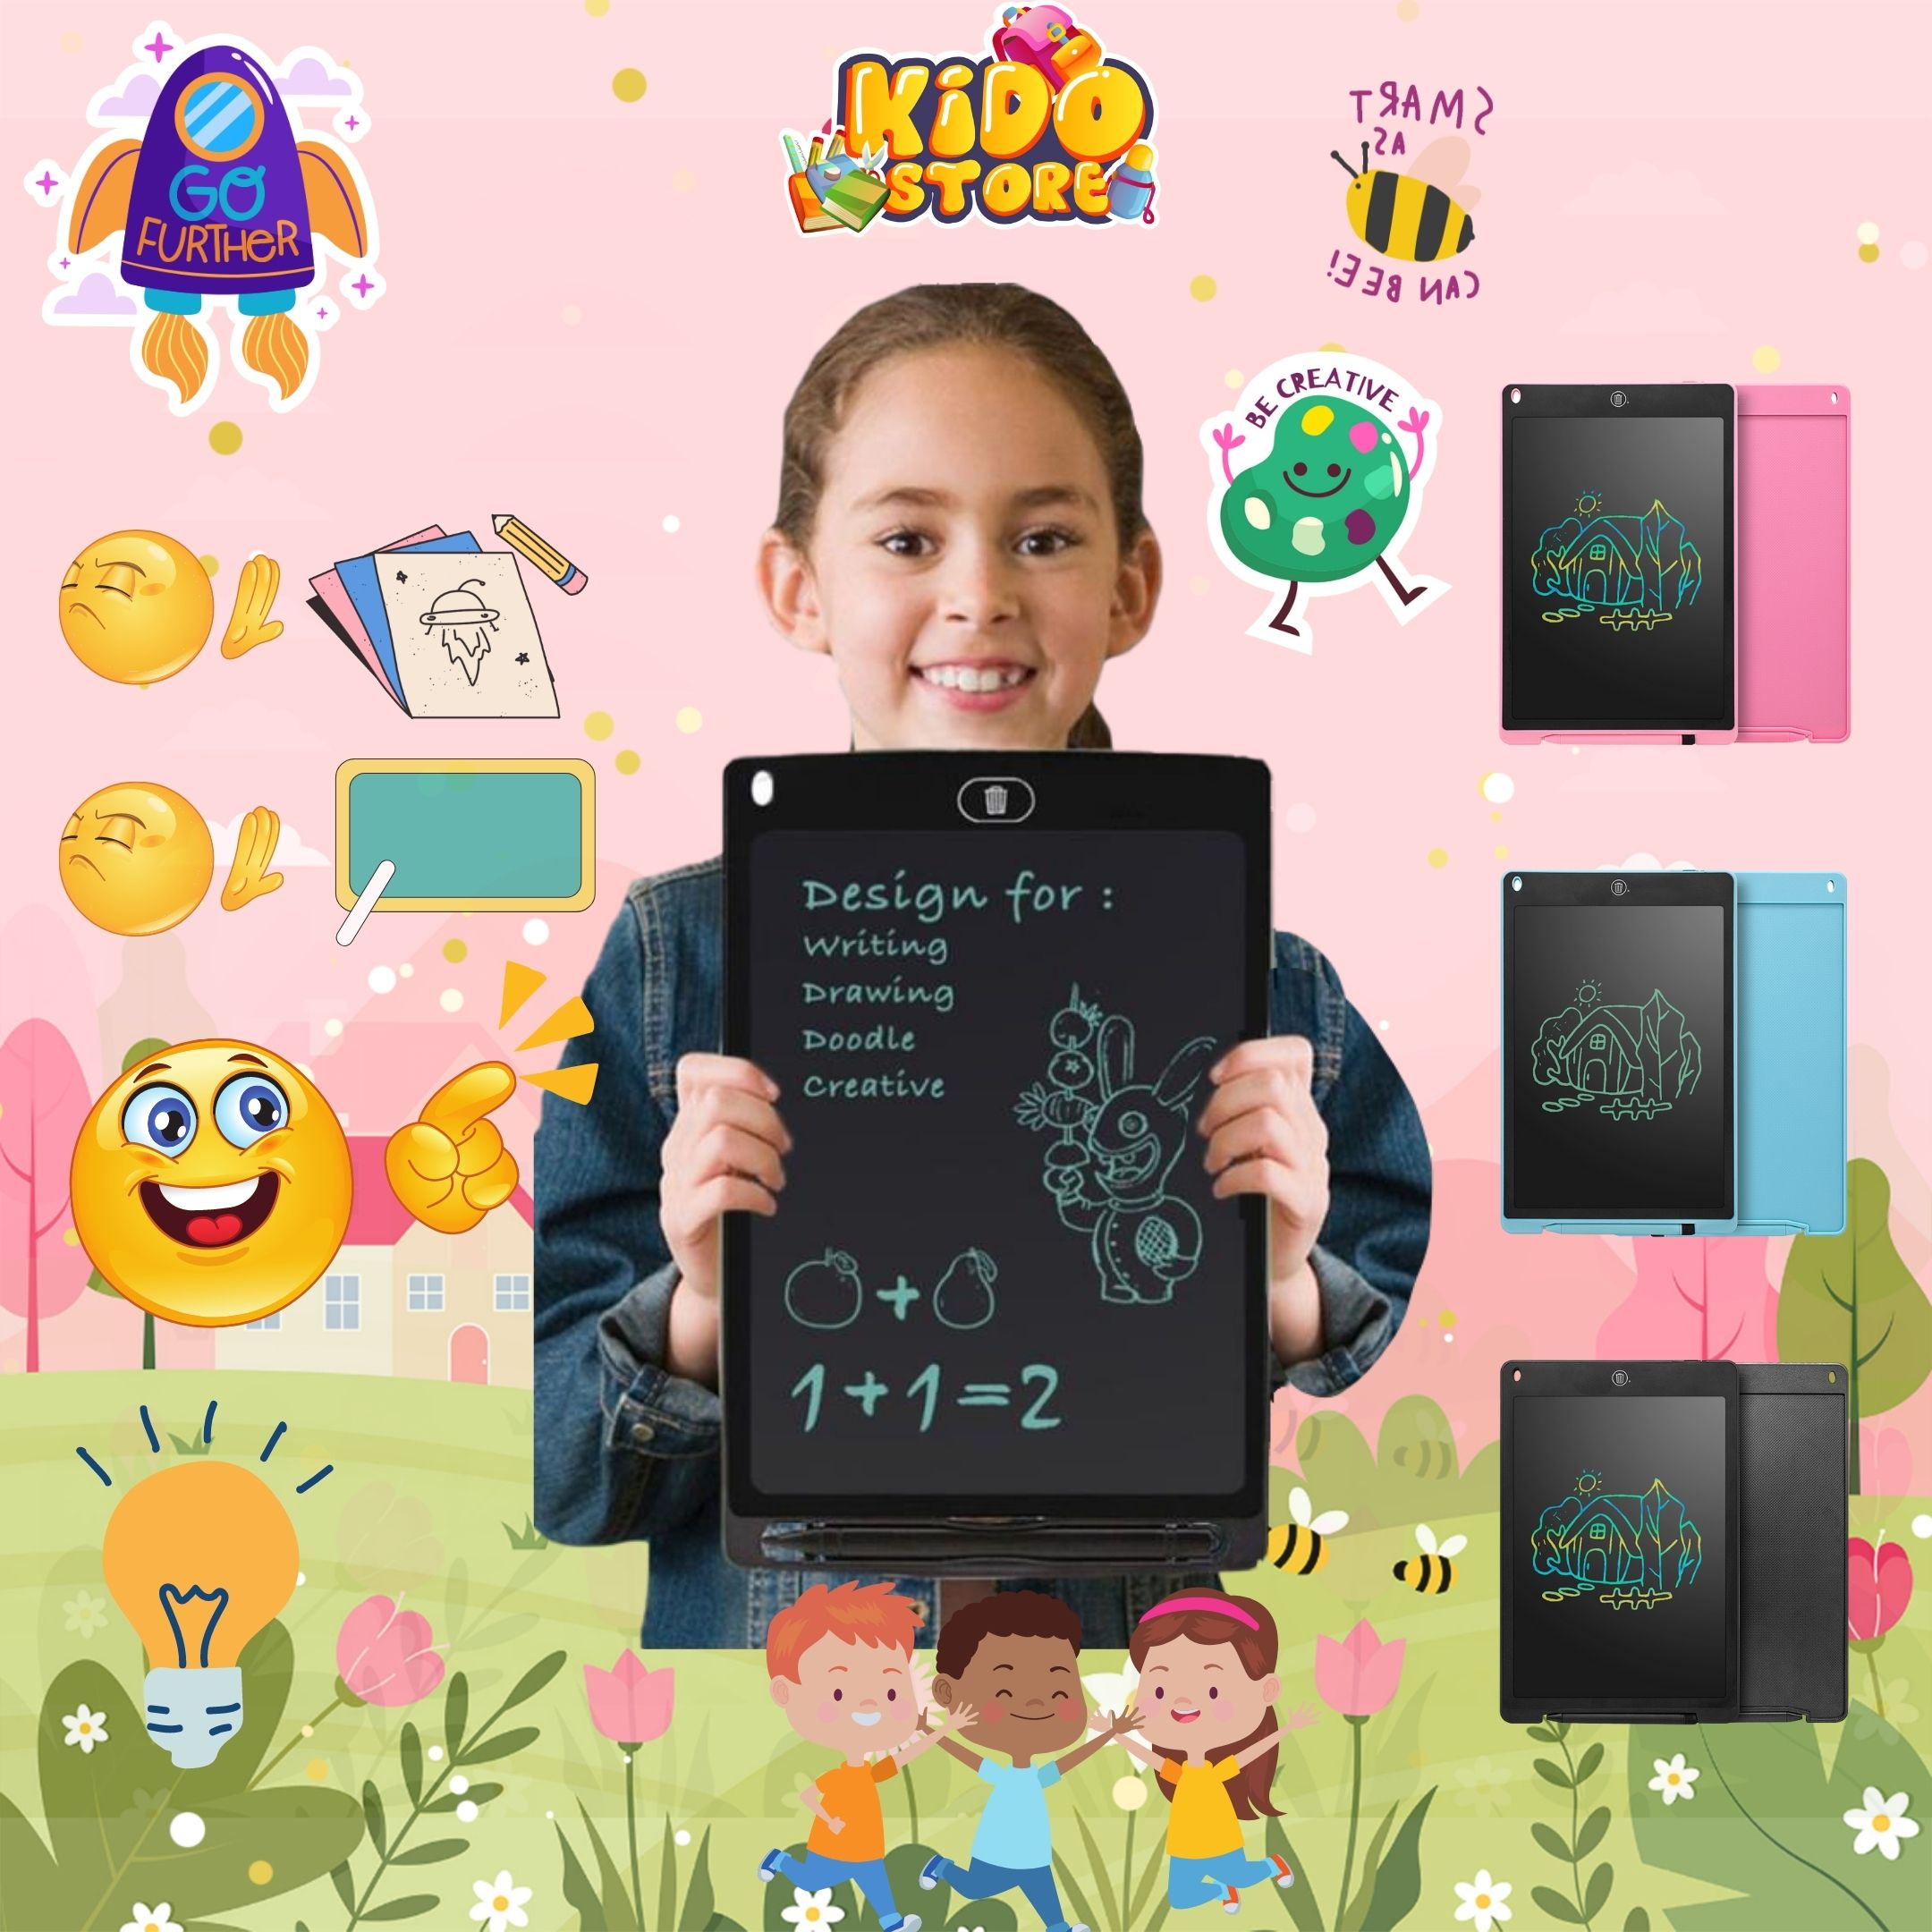 Bảng vẽ điện tử LCD cho bé: Giới thiệu bảng vẽ điện tử LCD đang làm mưa làm gió trên thị trường đồ chơi cho trẻ em. Bạn có thể cho bé vẽ, tô màu và thỏa sức sáng tạo với các kích thước và màu sắc đa dạng. Hơn nữa, bảng vẽ này còn giúp bé phát triển tư duy và khả năng sáng tạo. Hãy thử và trải nghiệm ngay cho bé của bạn!